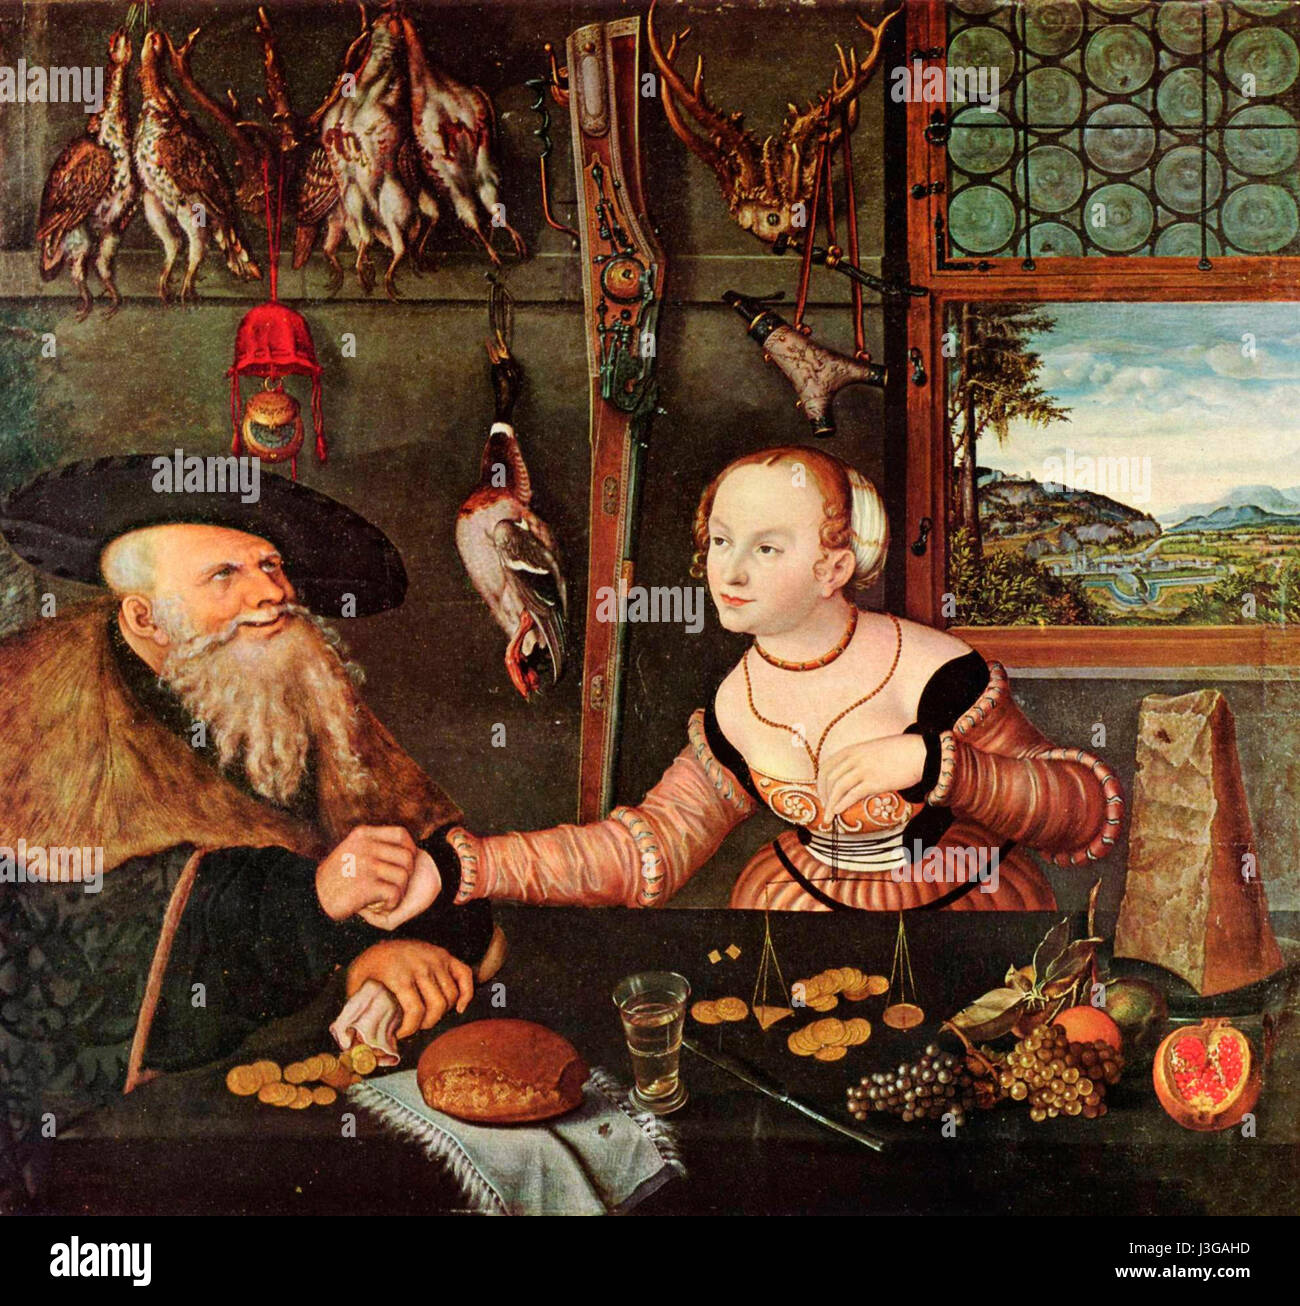 La falta de adecuación en pareja - 1532 - Lucas Cranach Foto de stock